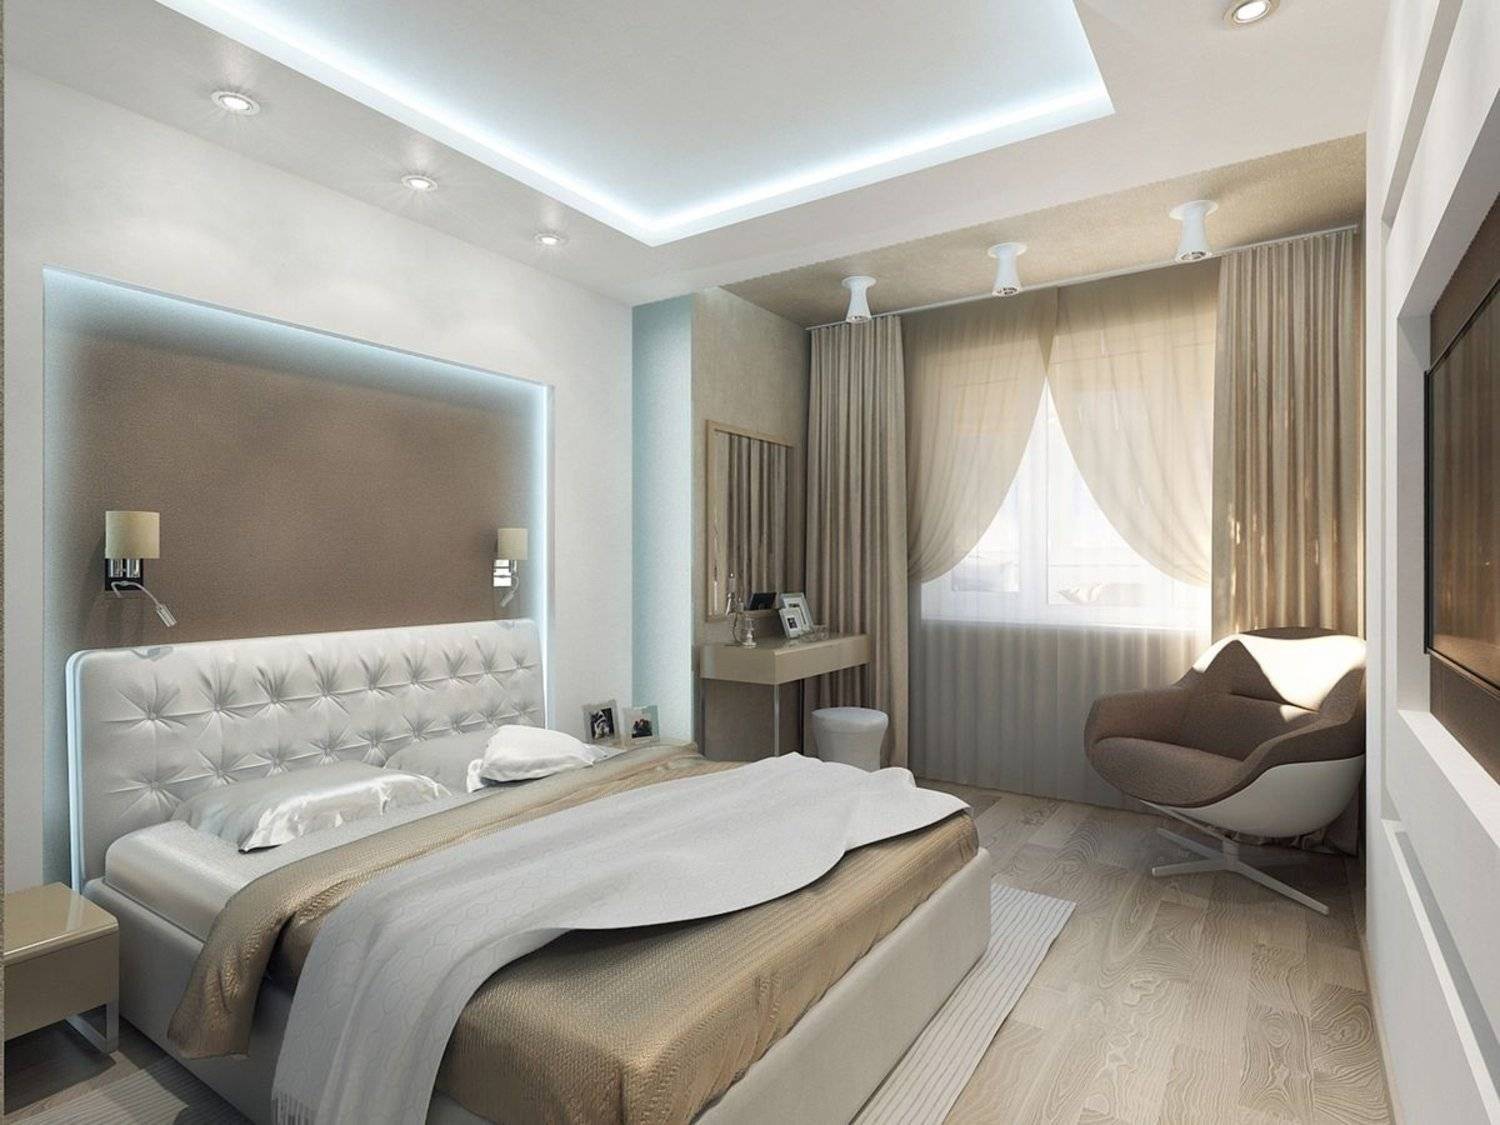 Дизайн спальни 14 кв. м. – планировки, расстановка мебели, идеи обустройства, стили